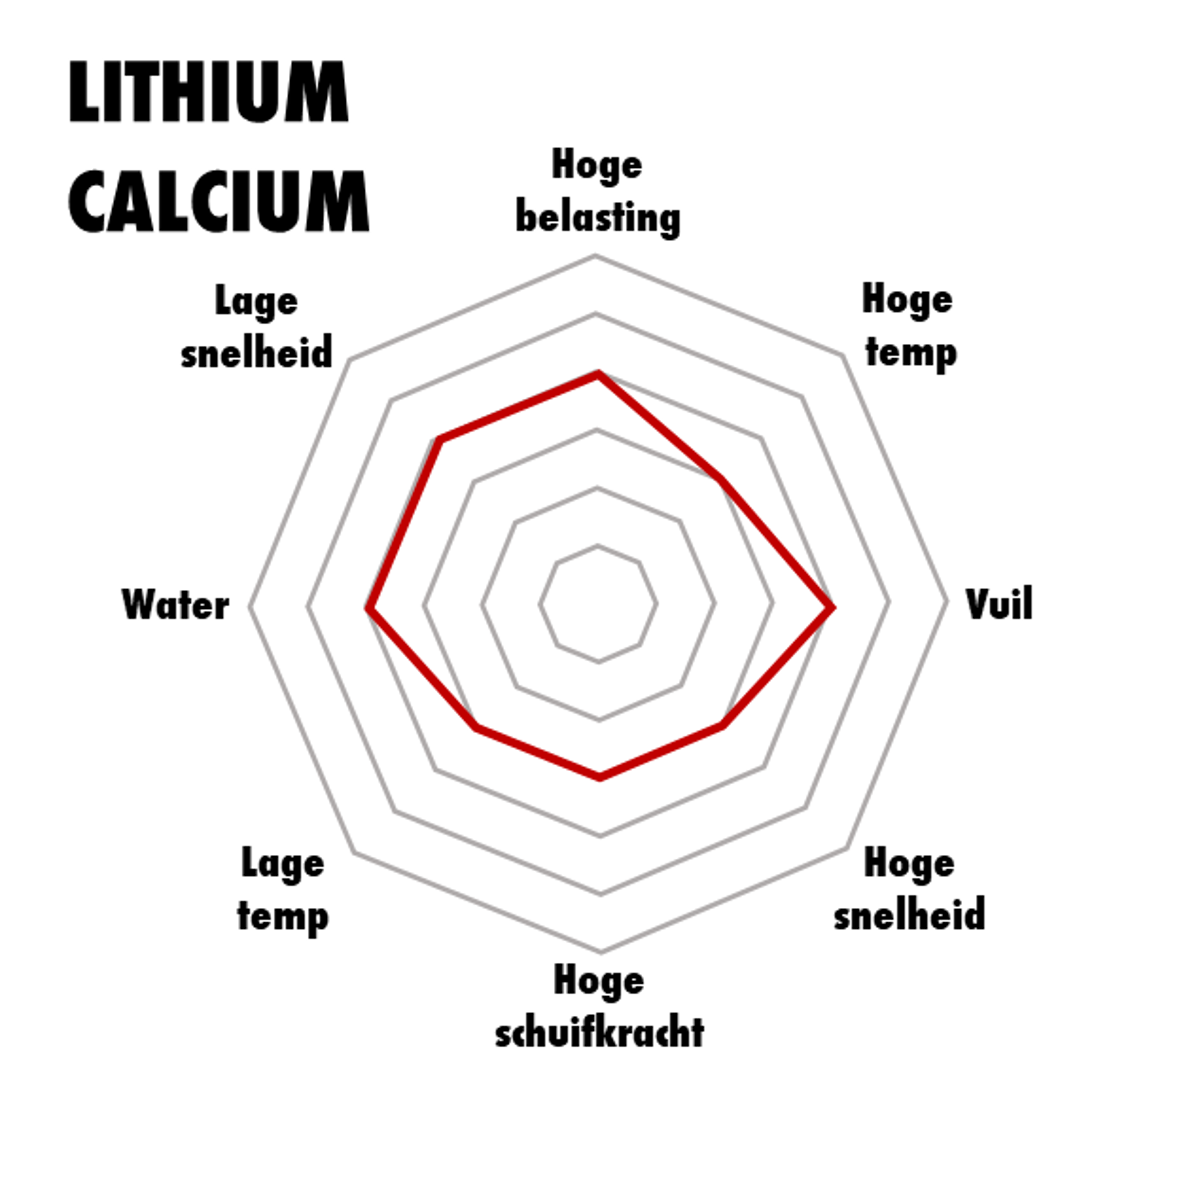 Lithium calcium